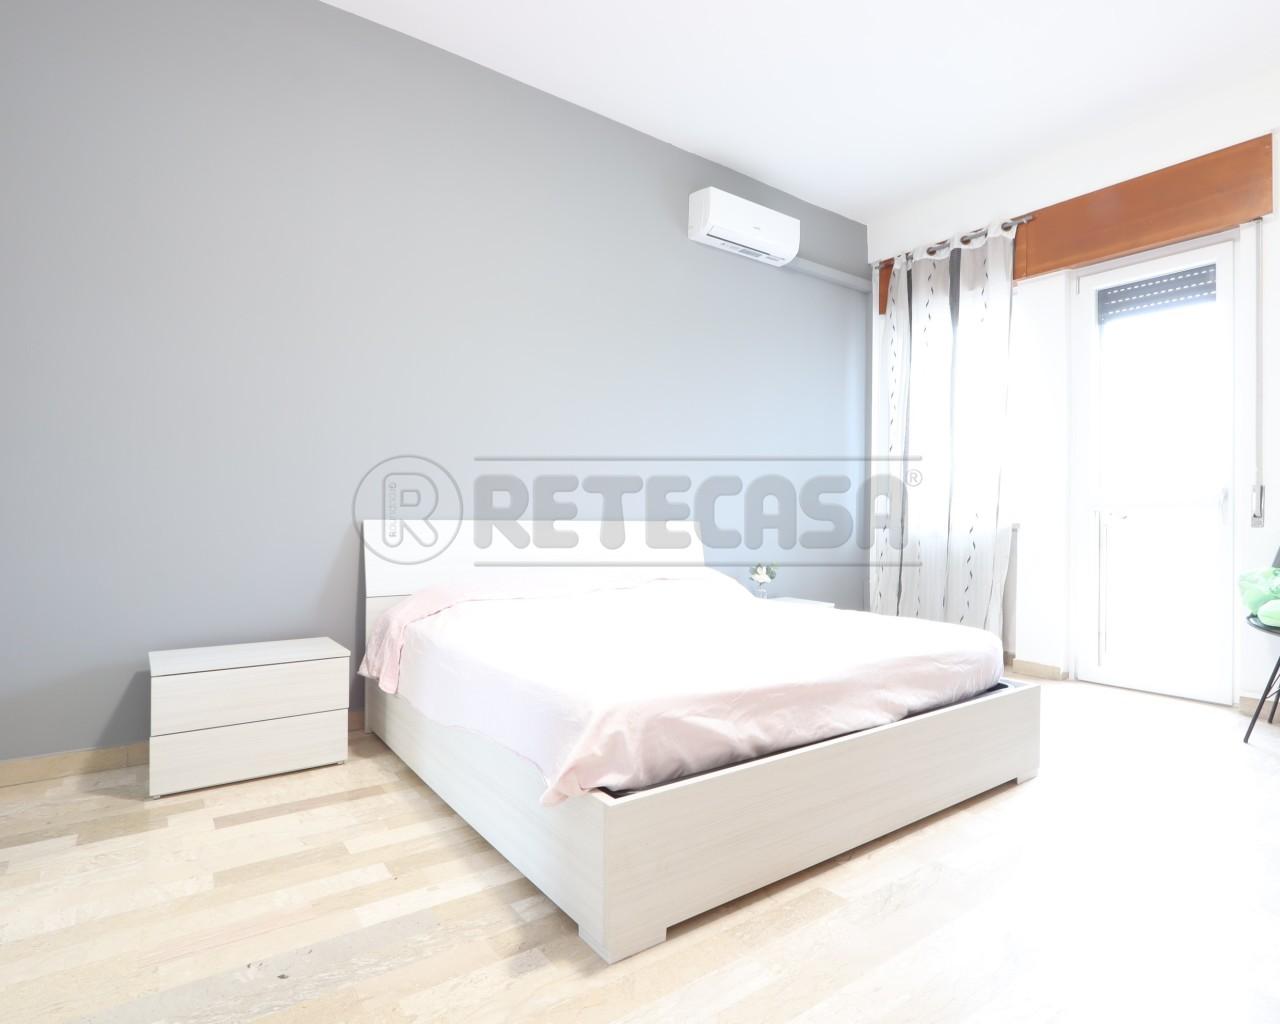 Renta Habitaciones y habitaciones en alquiler, Vicenza foto